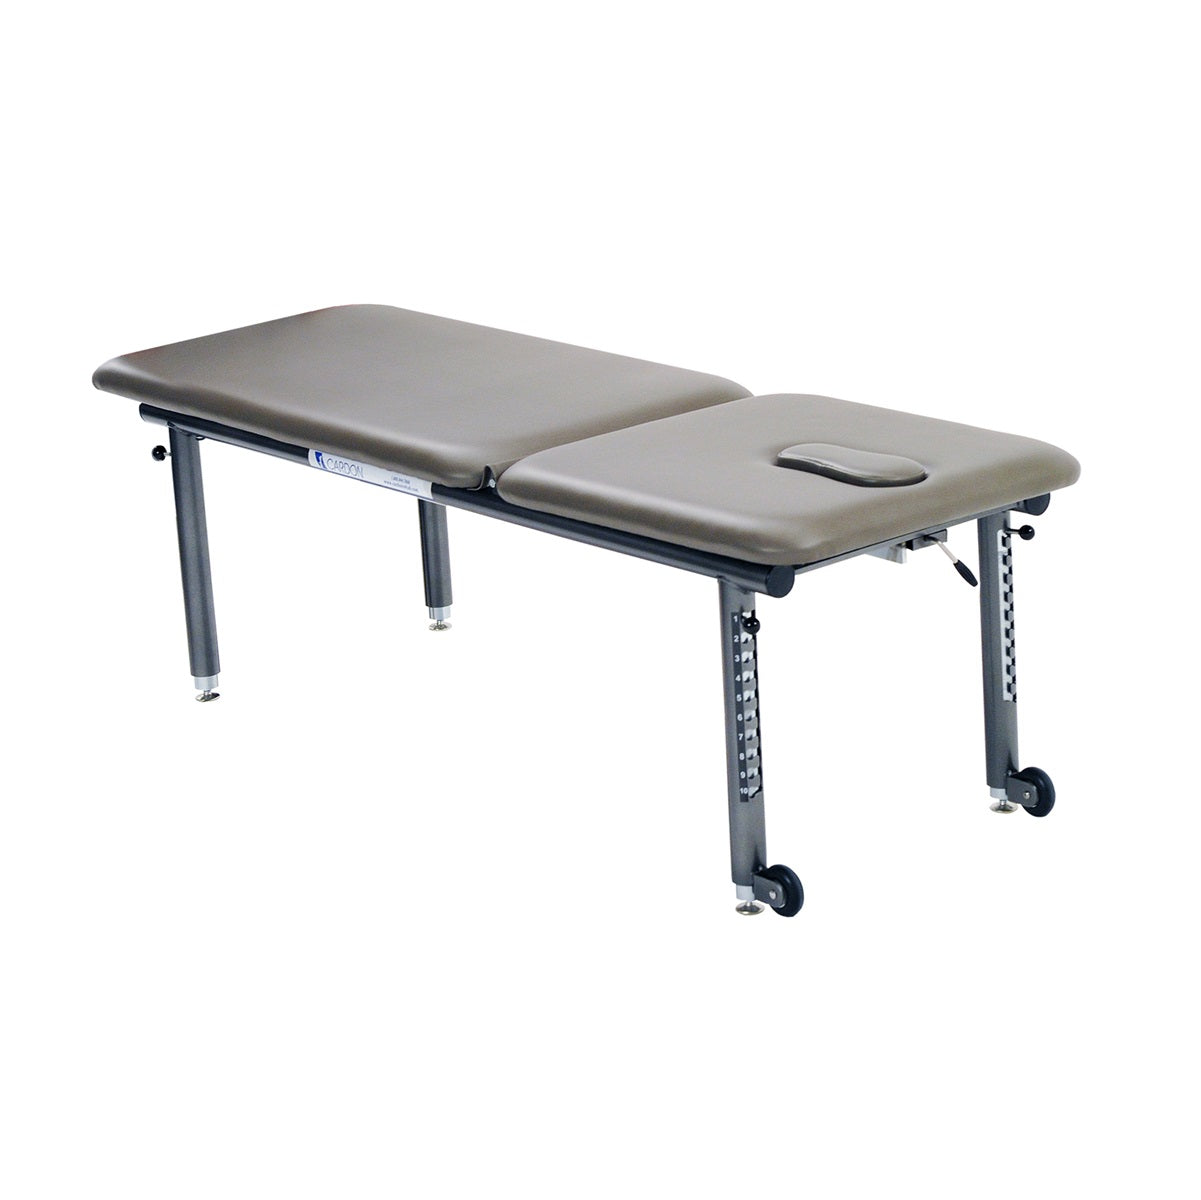 Adjustable Height Treatment Table (AHT)